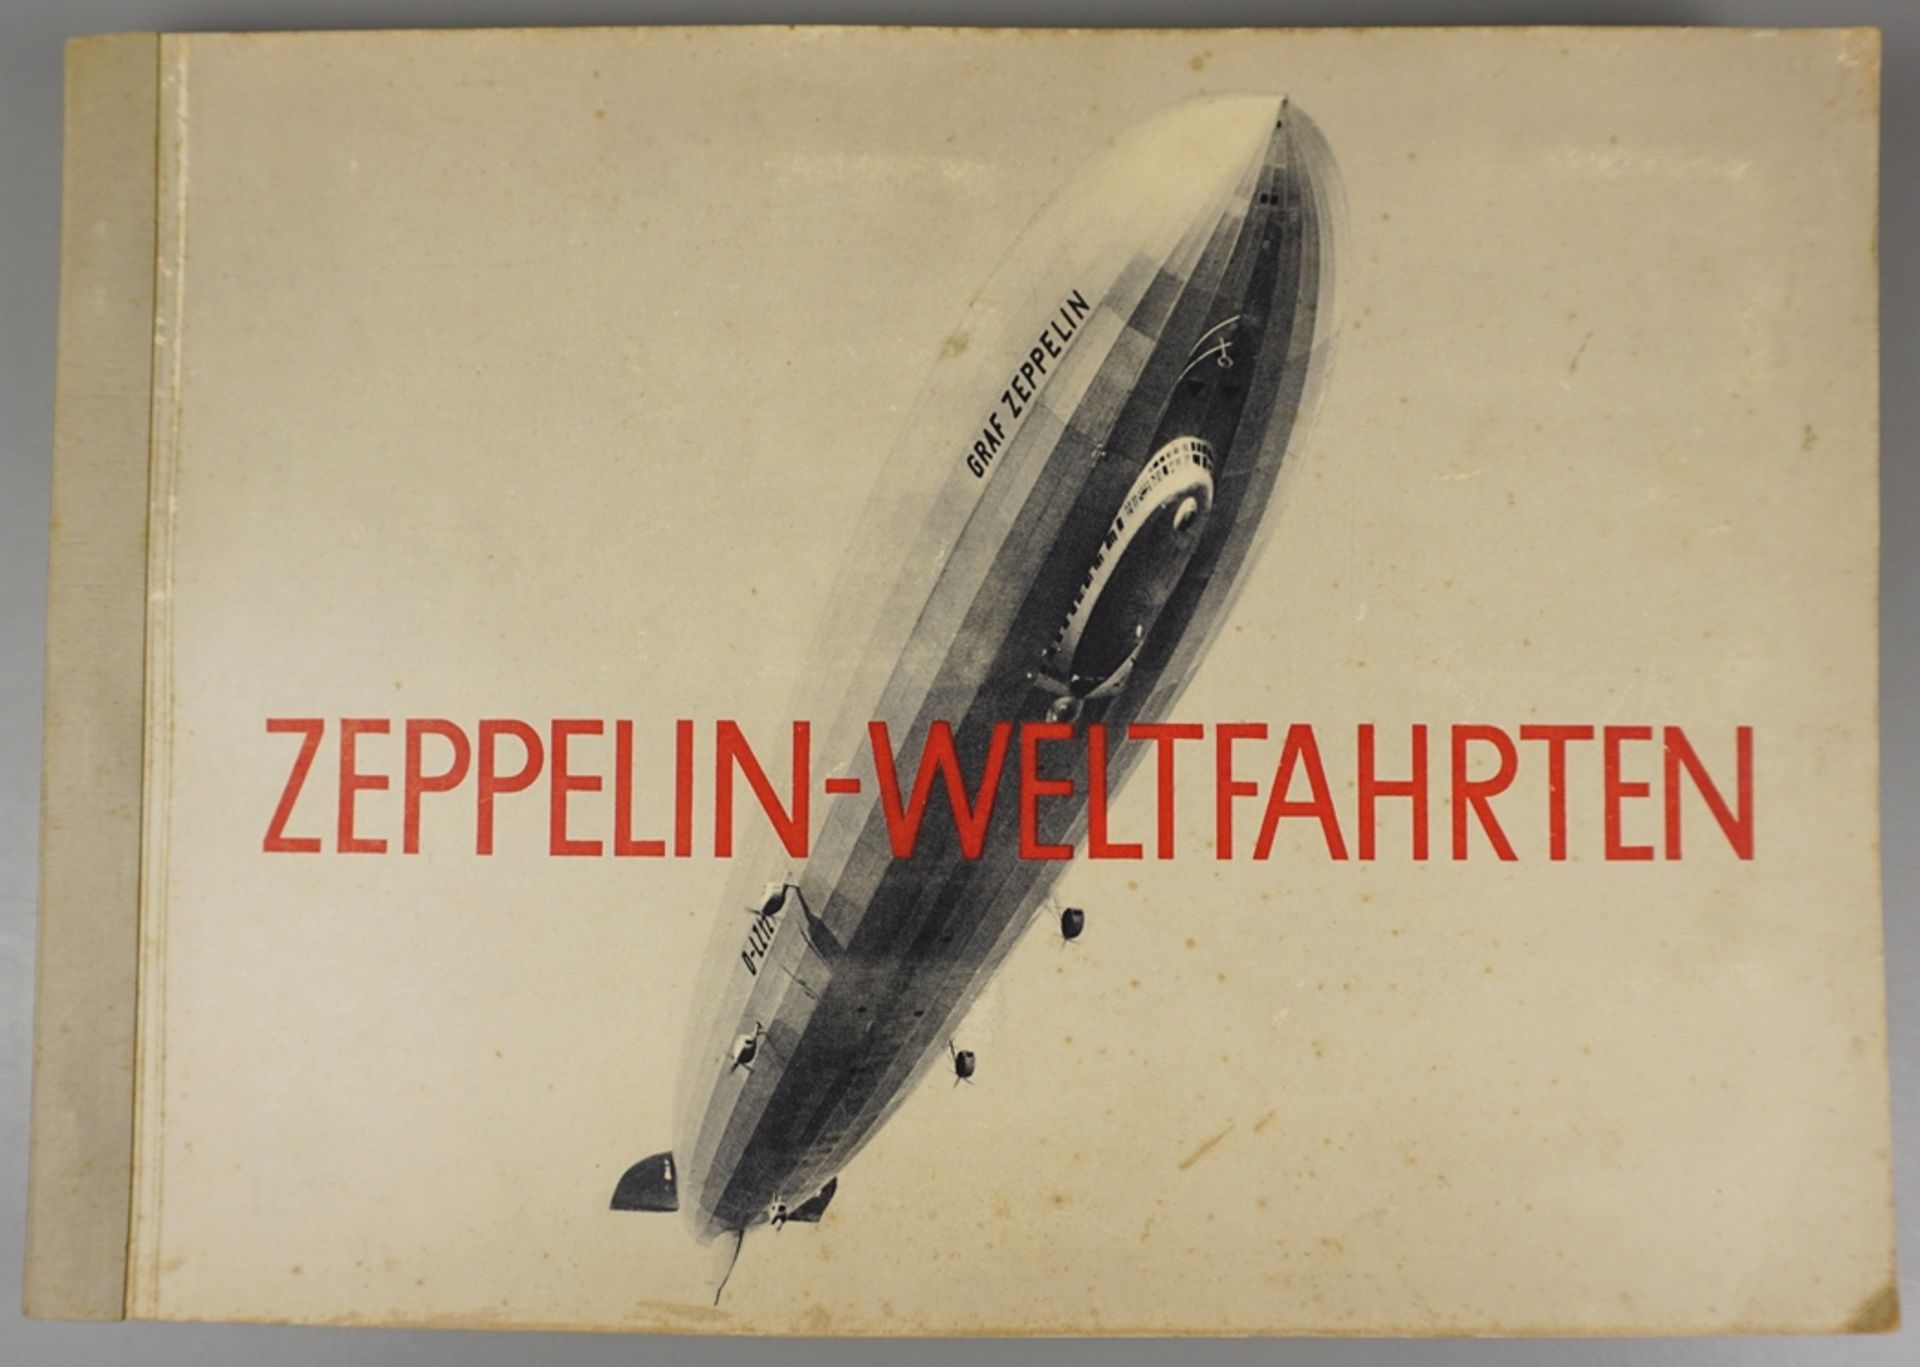 Zeppelin-Weltfahrten, Zigarettenbilderalbum, 1932, Album 1